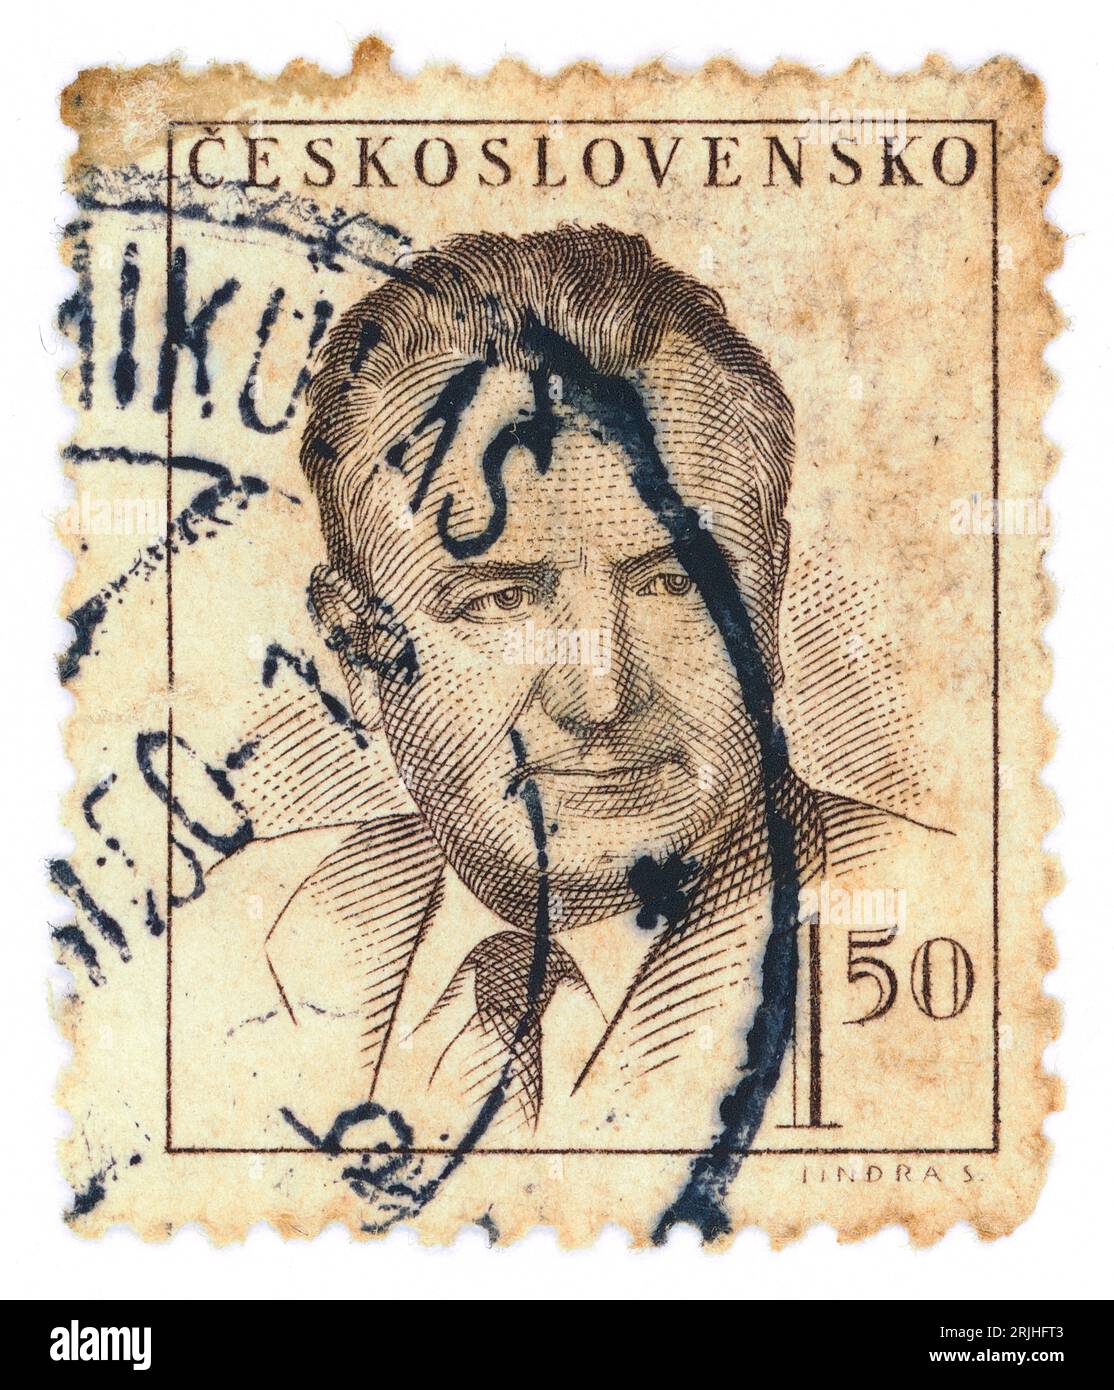 Klement Gottwald (1896–1953). Briefmarke, ausgestellt in der Tschechoslowakei 1948. Klement Gottwald war ein tschechischer kommunistischer Politiker, der von 1929 bis zu seinem Tod 1953 Führer der Kommunistischen Partei der Tschechoslowakei war – bis 1945 als Generalsekretär und von 1945 bis 1953 als Vorsitzender. Er war der erste Führer der Kommunistischen Tschechoslowakei von 1948 bis 1953. Stockfoto